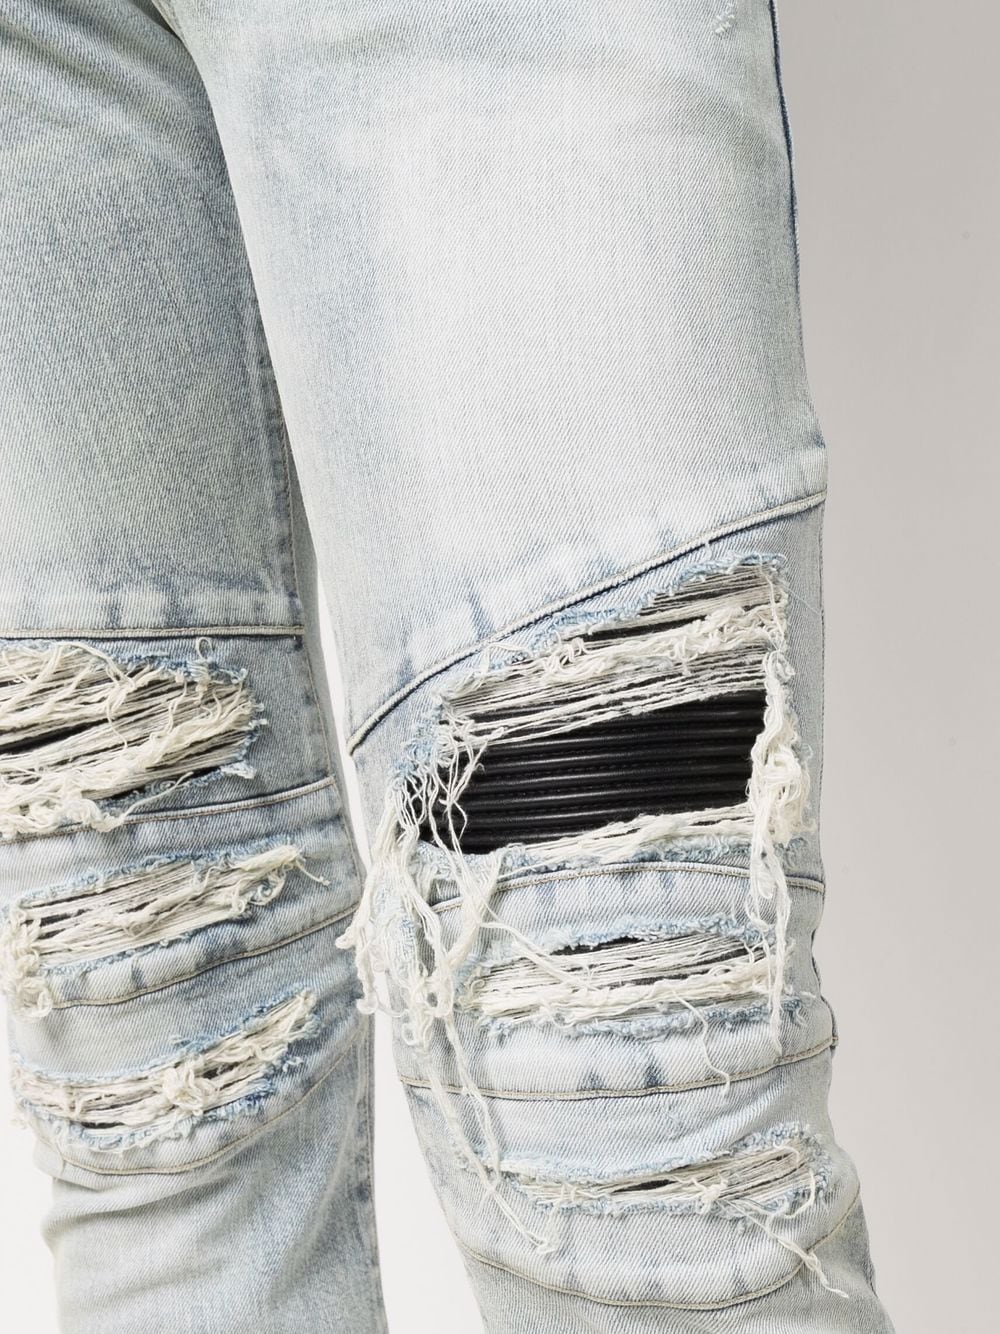 фото Balmain джинсы скинни с эффектом потертости